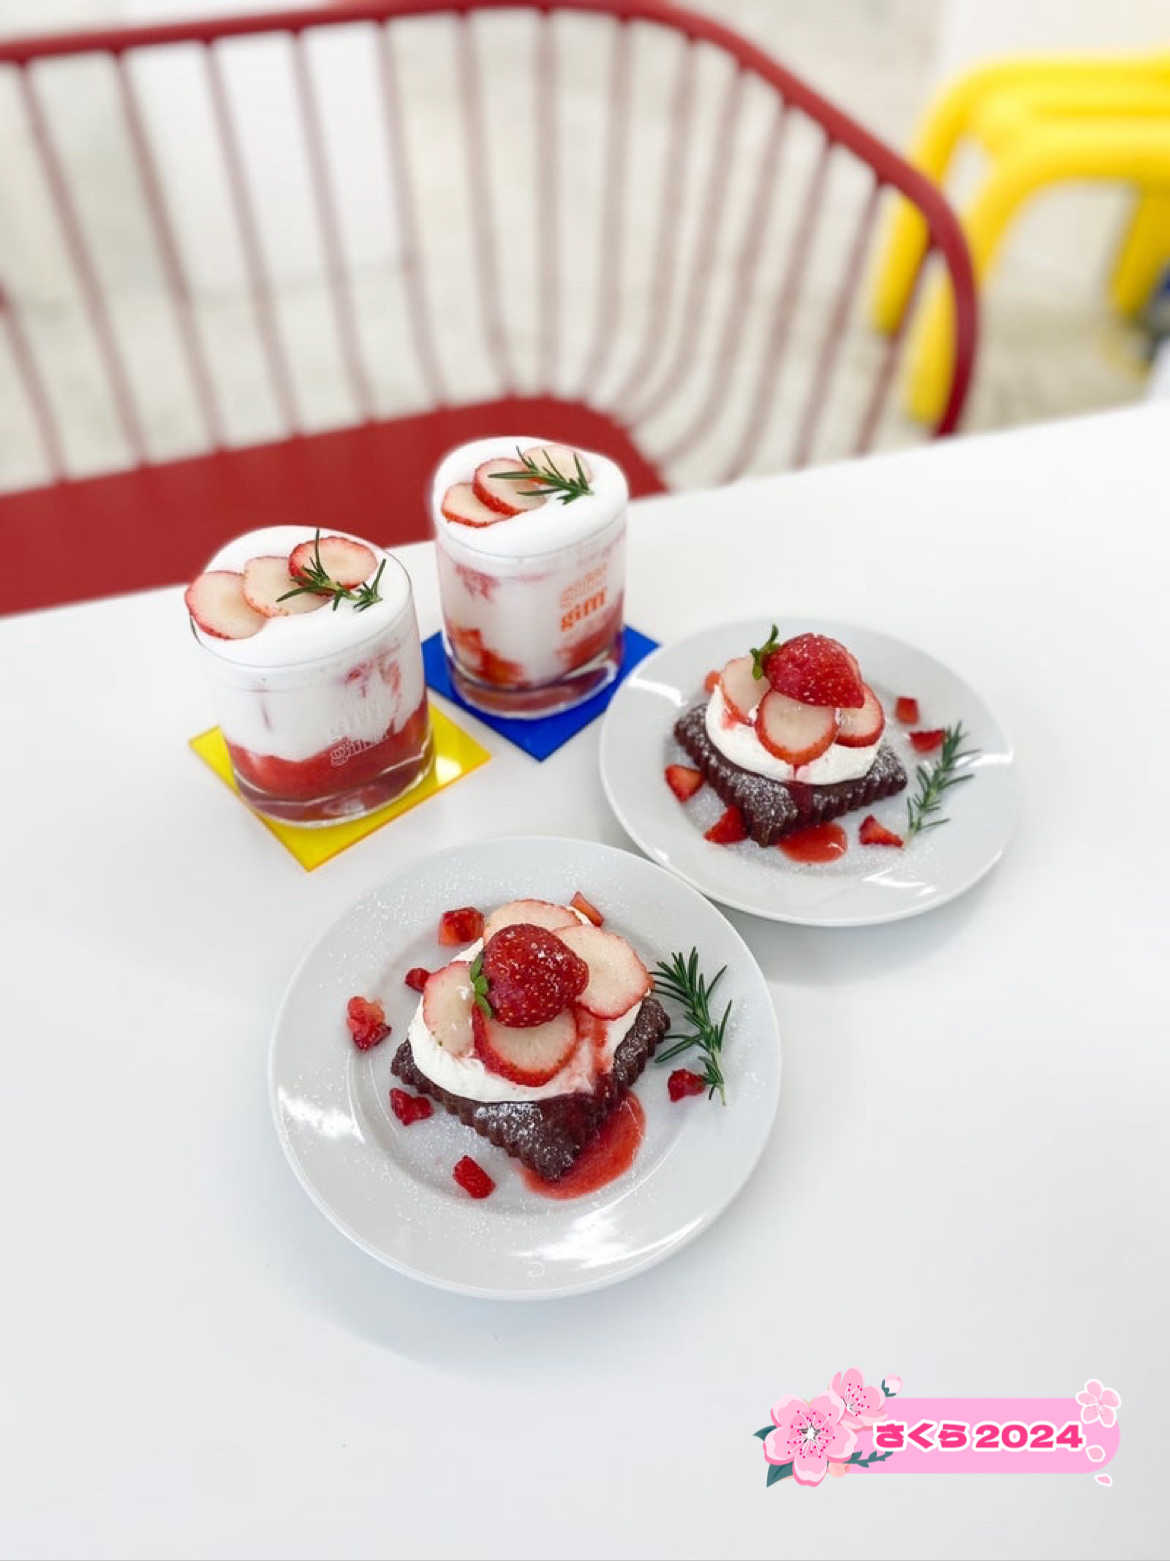 【北九州咖啡】使用草莓制作的可爱甜点和饮料